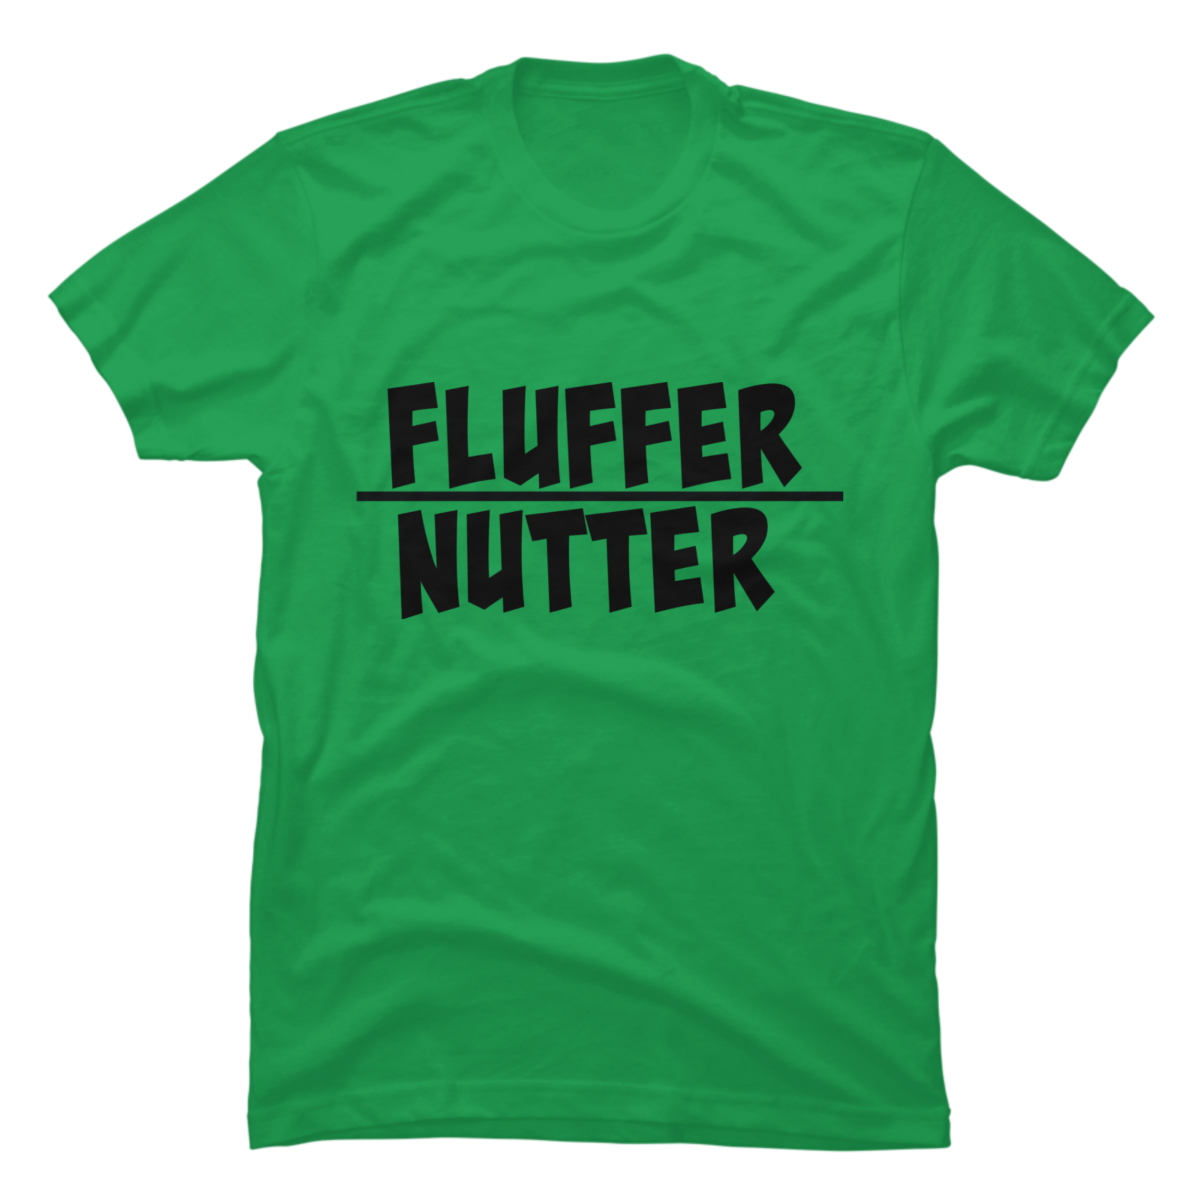 fluffer t shirt